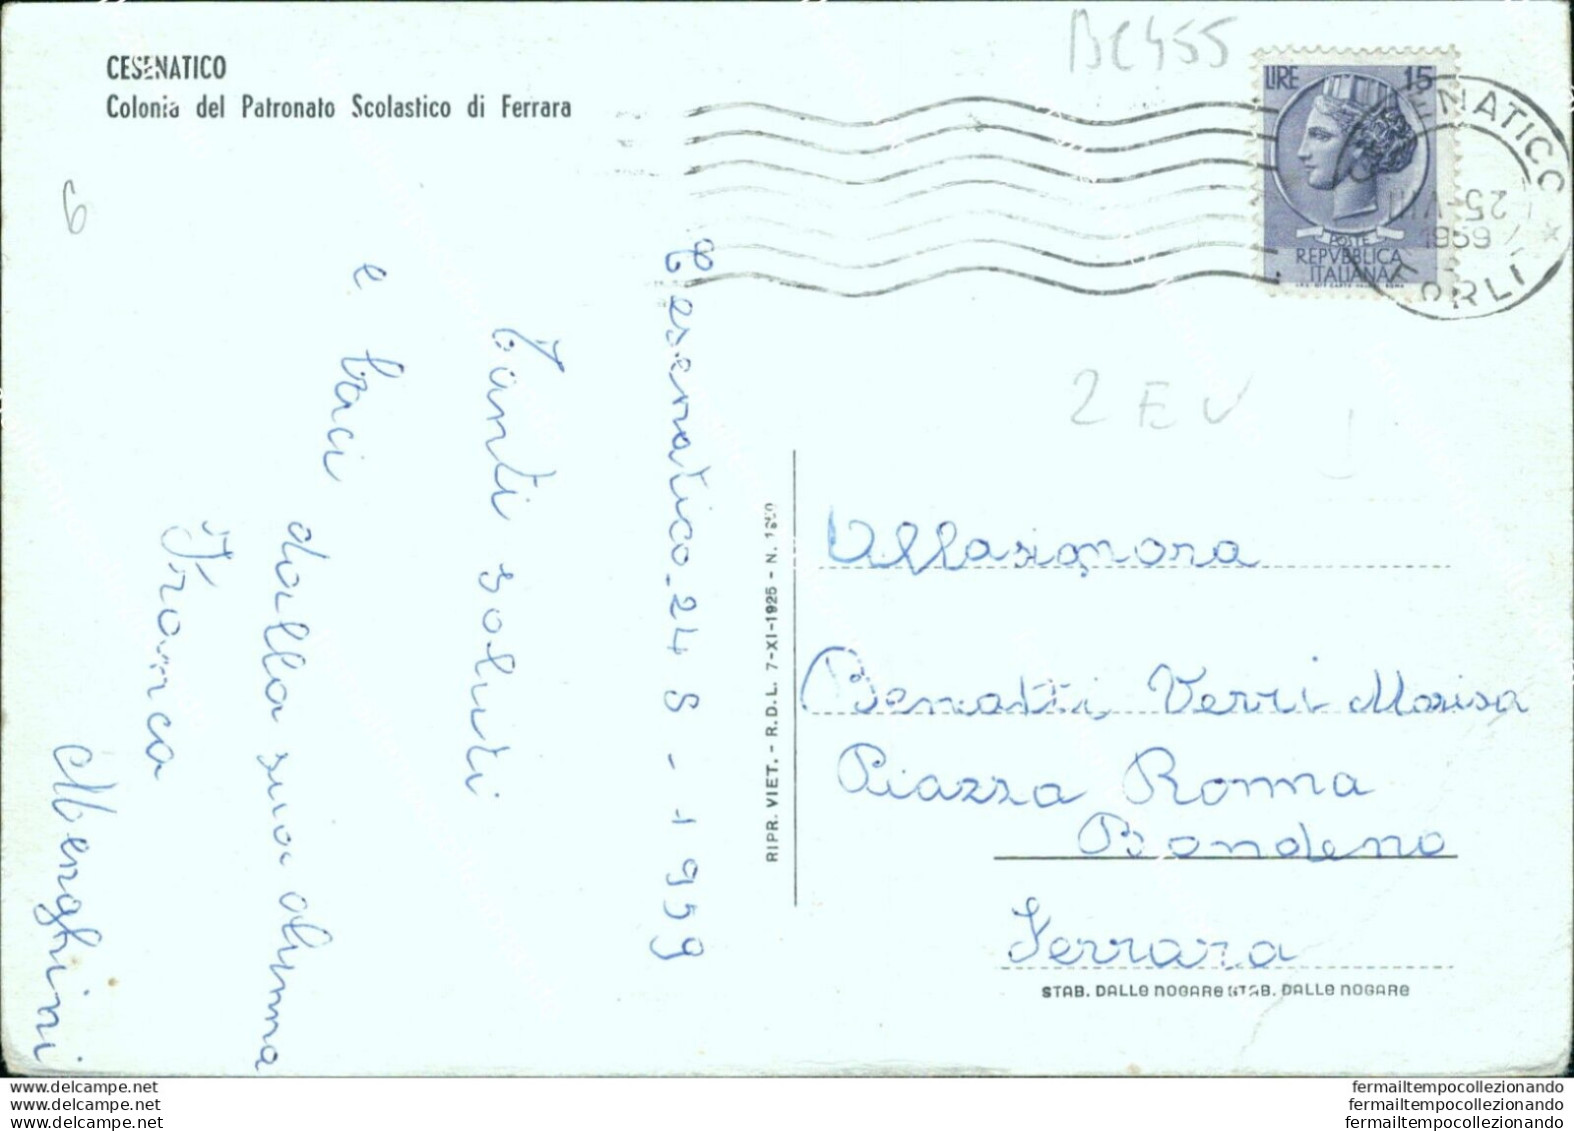 Bc455 Cartolina Cesenatico Colonia Del Patronato Scolastico Di Ferrara Forli' - Forli